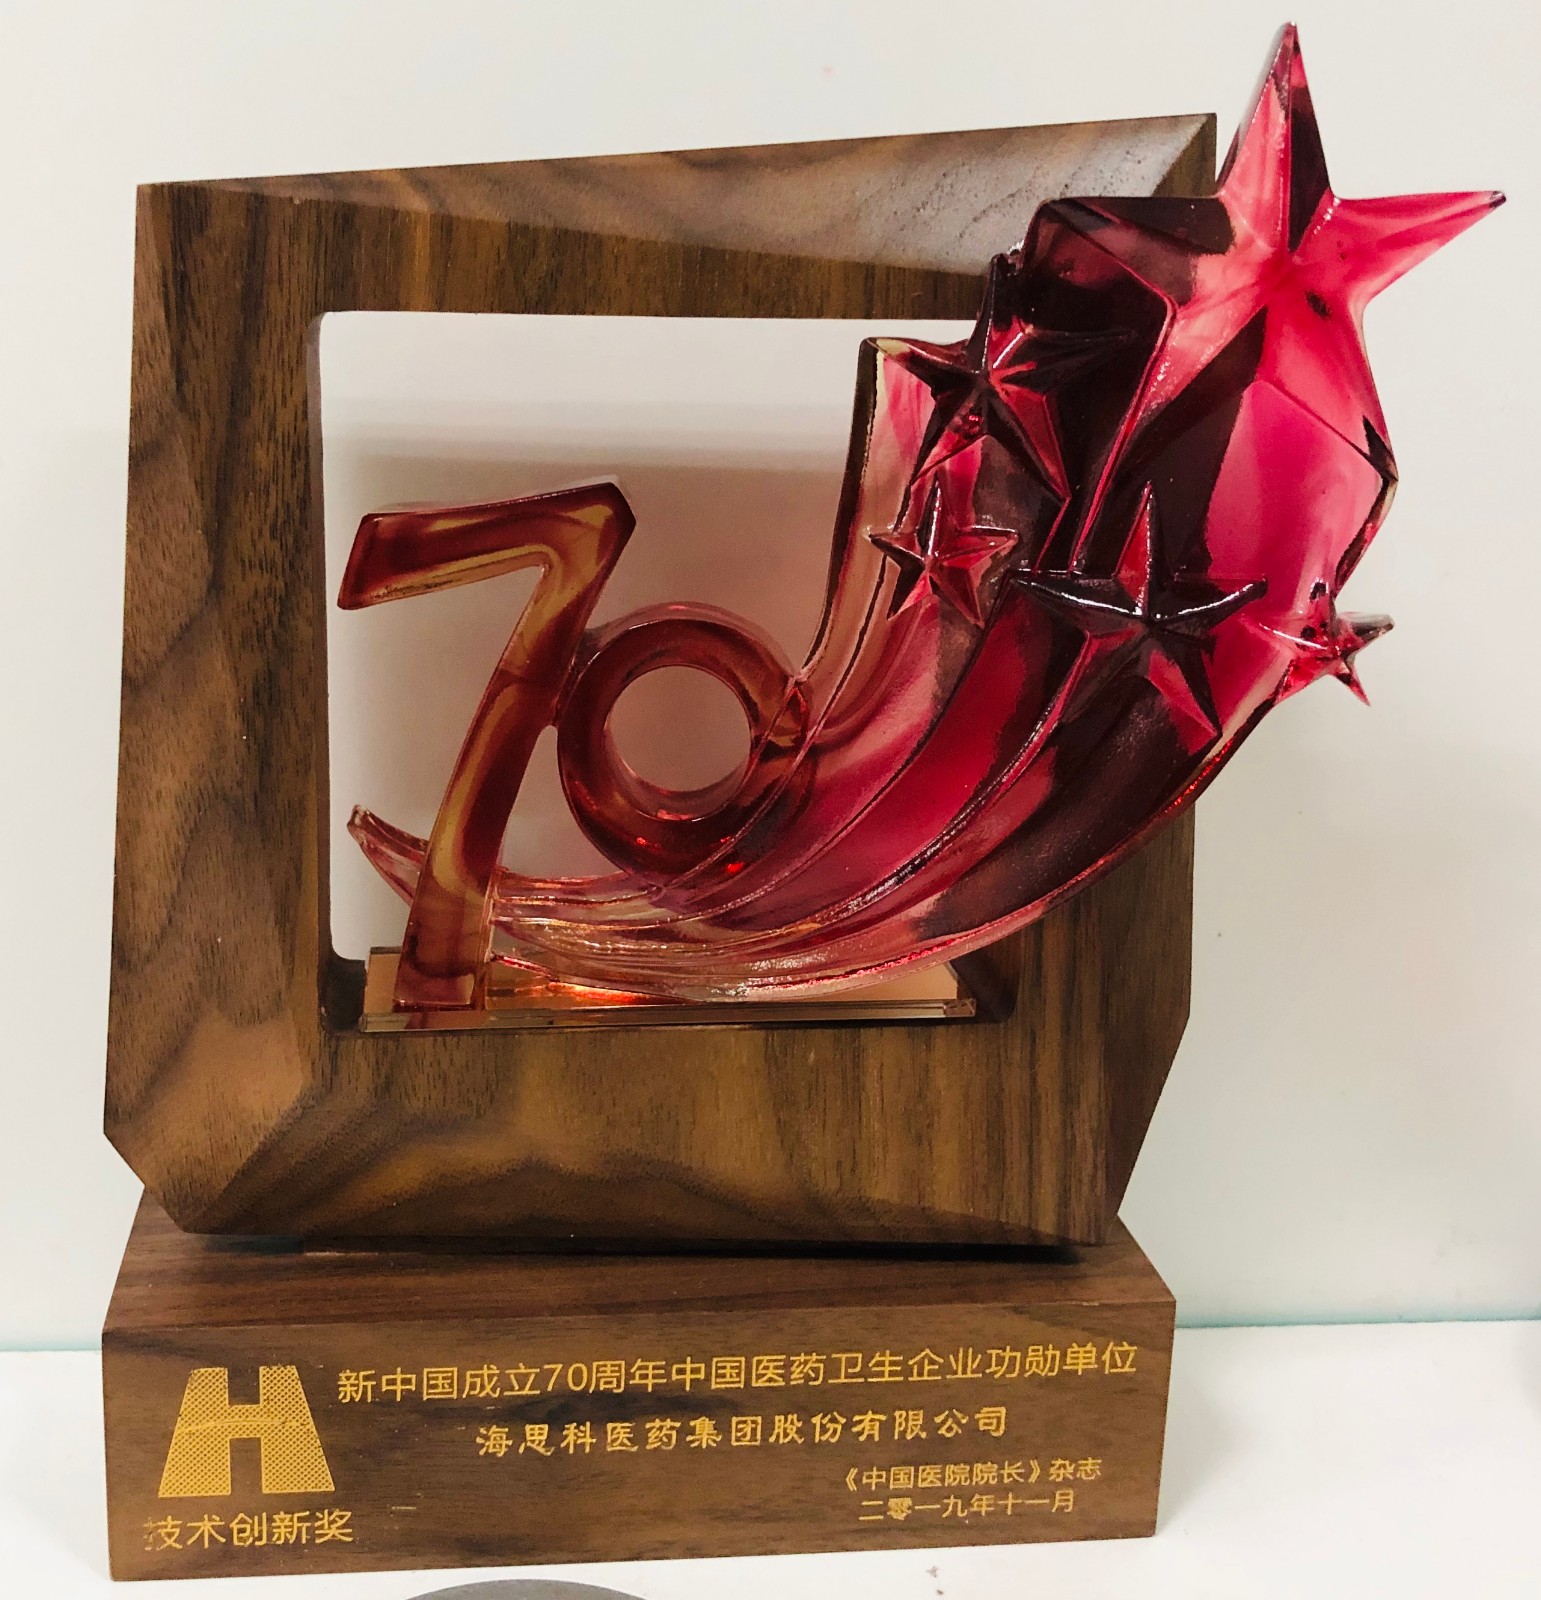 2019年“新中国成立70周年·中国医药卫生企业功勋单位”技术创新奖